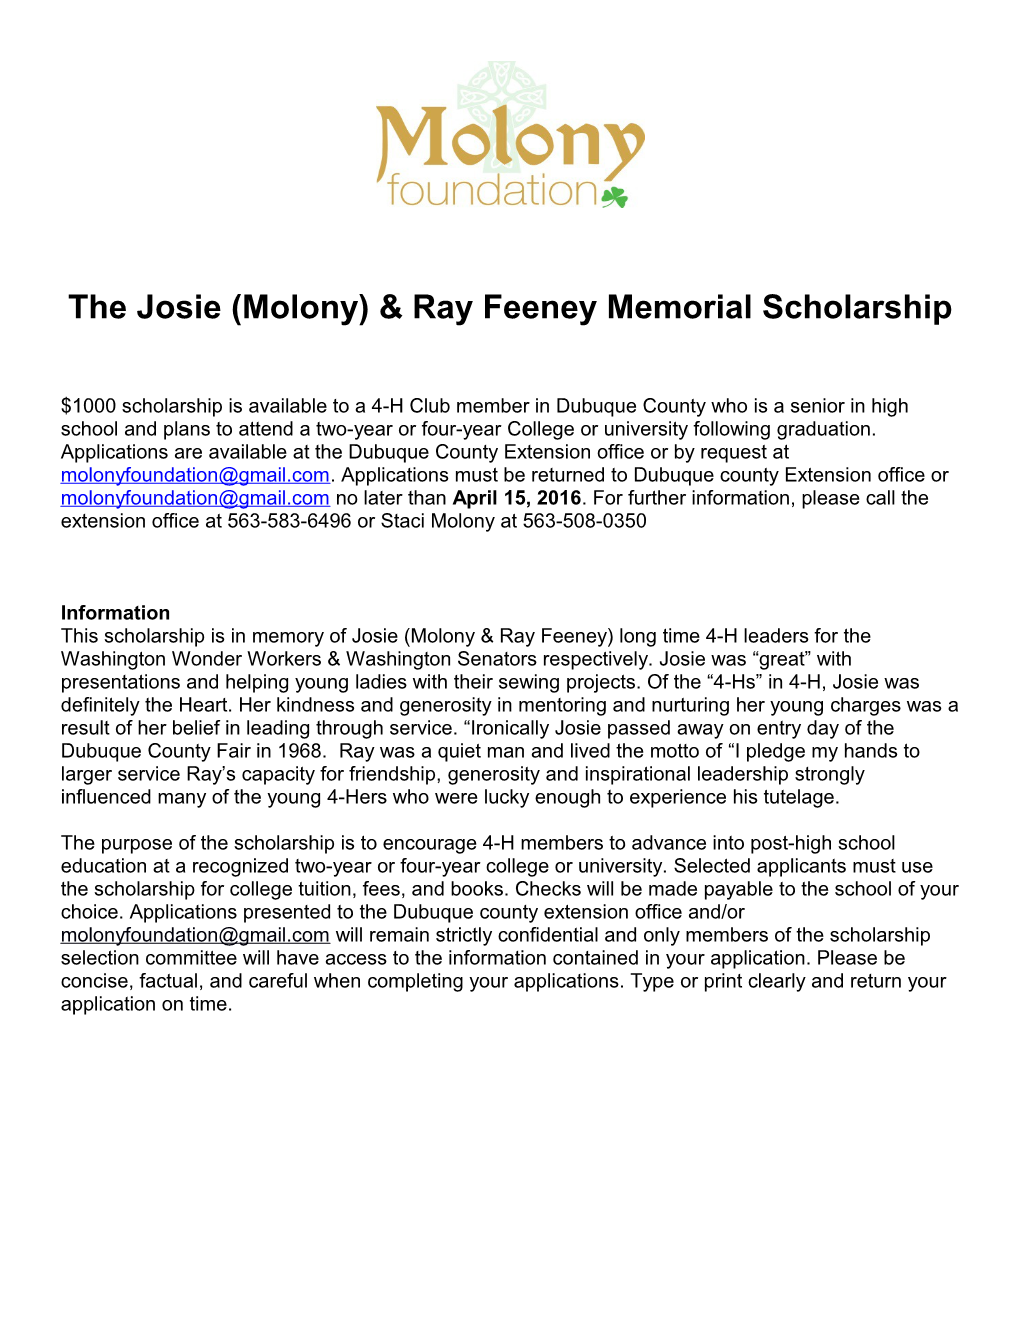 The Josie (Molony) & Ray Feeney Memorial Scholarship